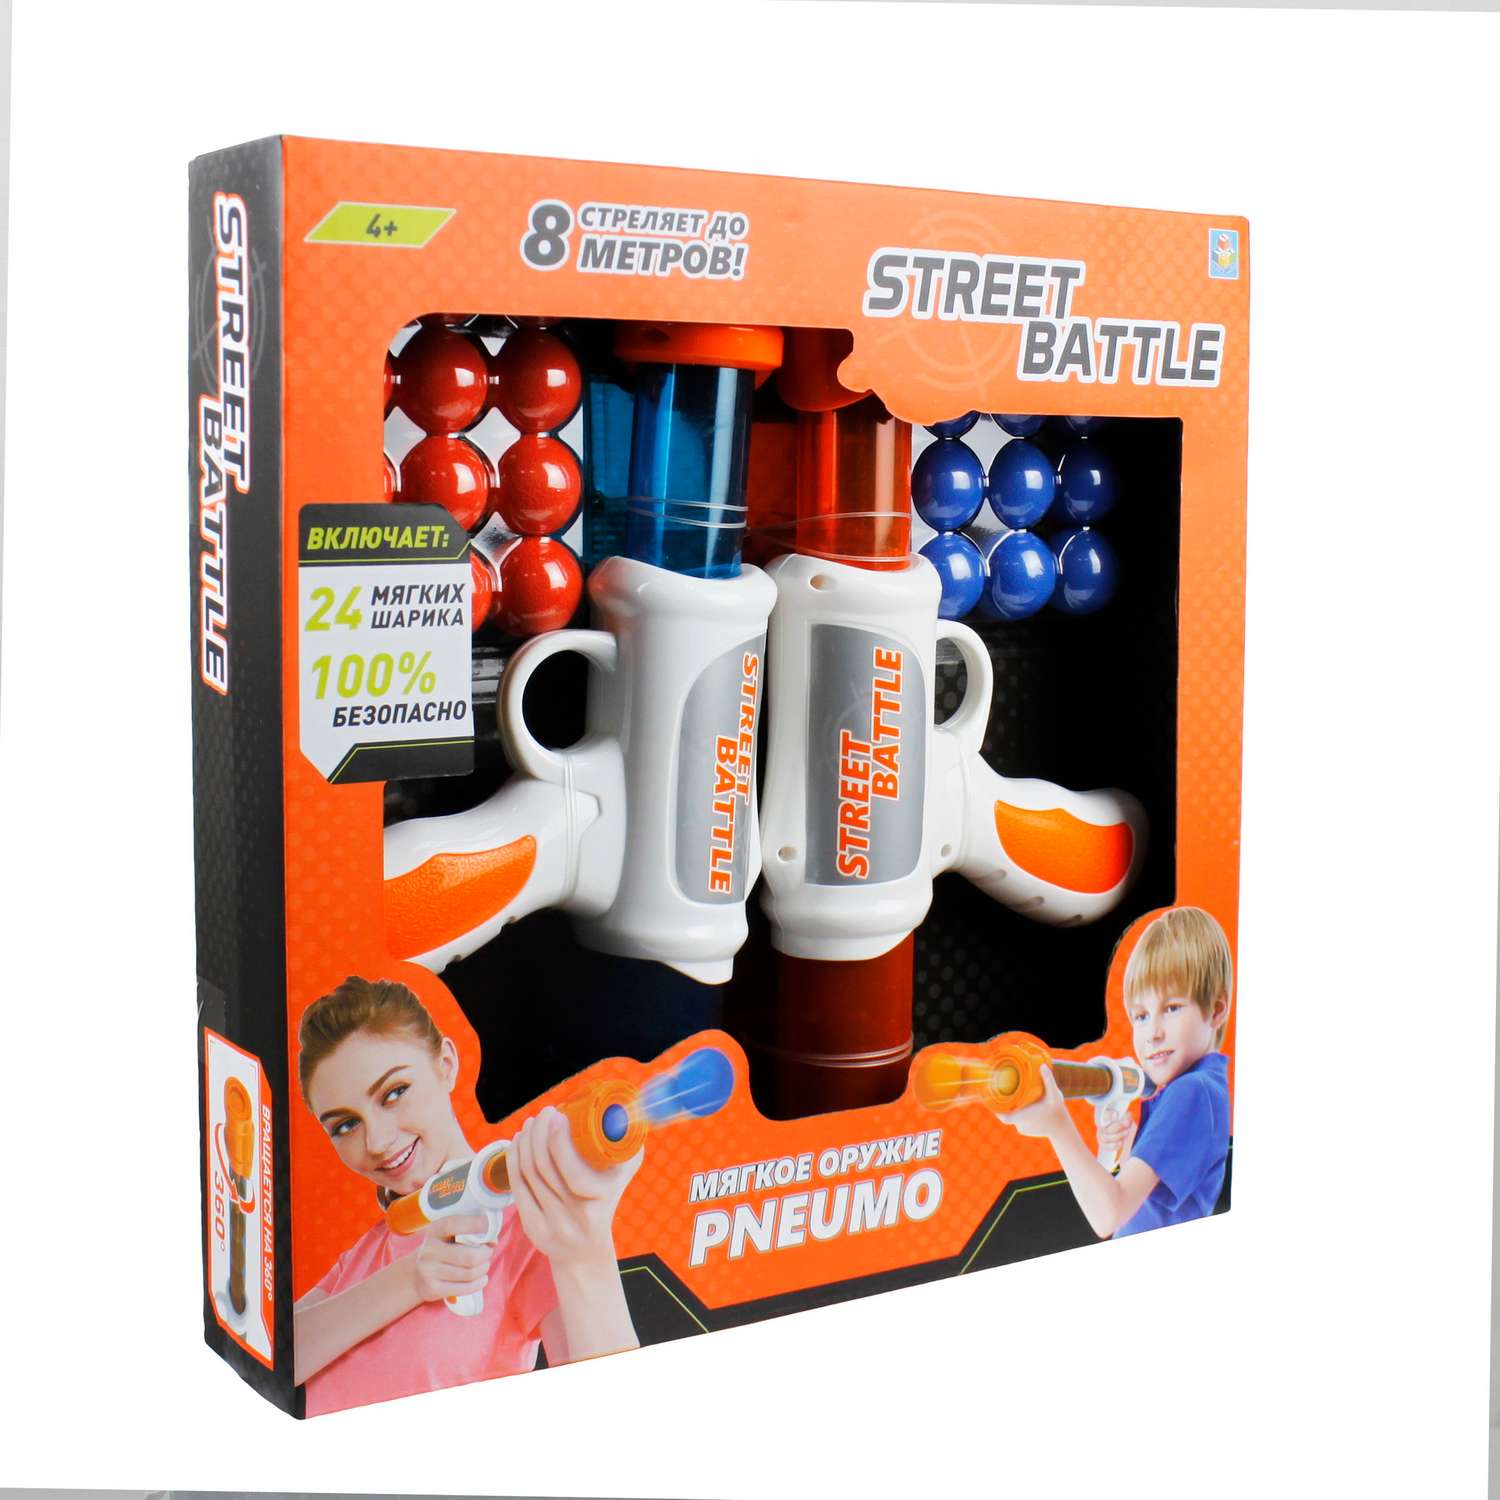 Игровой набор Street Battle оружие с мягкими шариками в комплекте 24 шара и 2 пистолета - фото 4